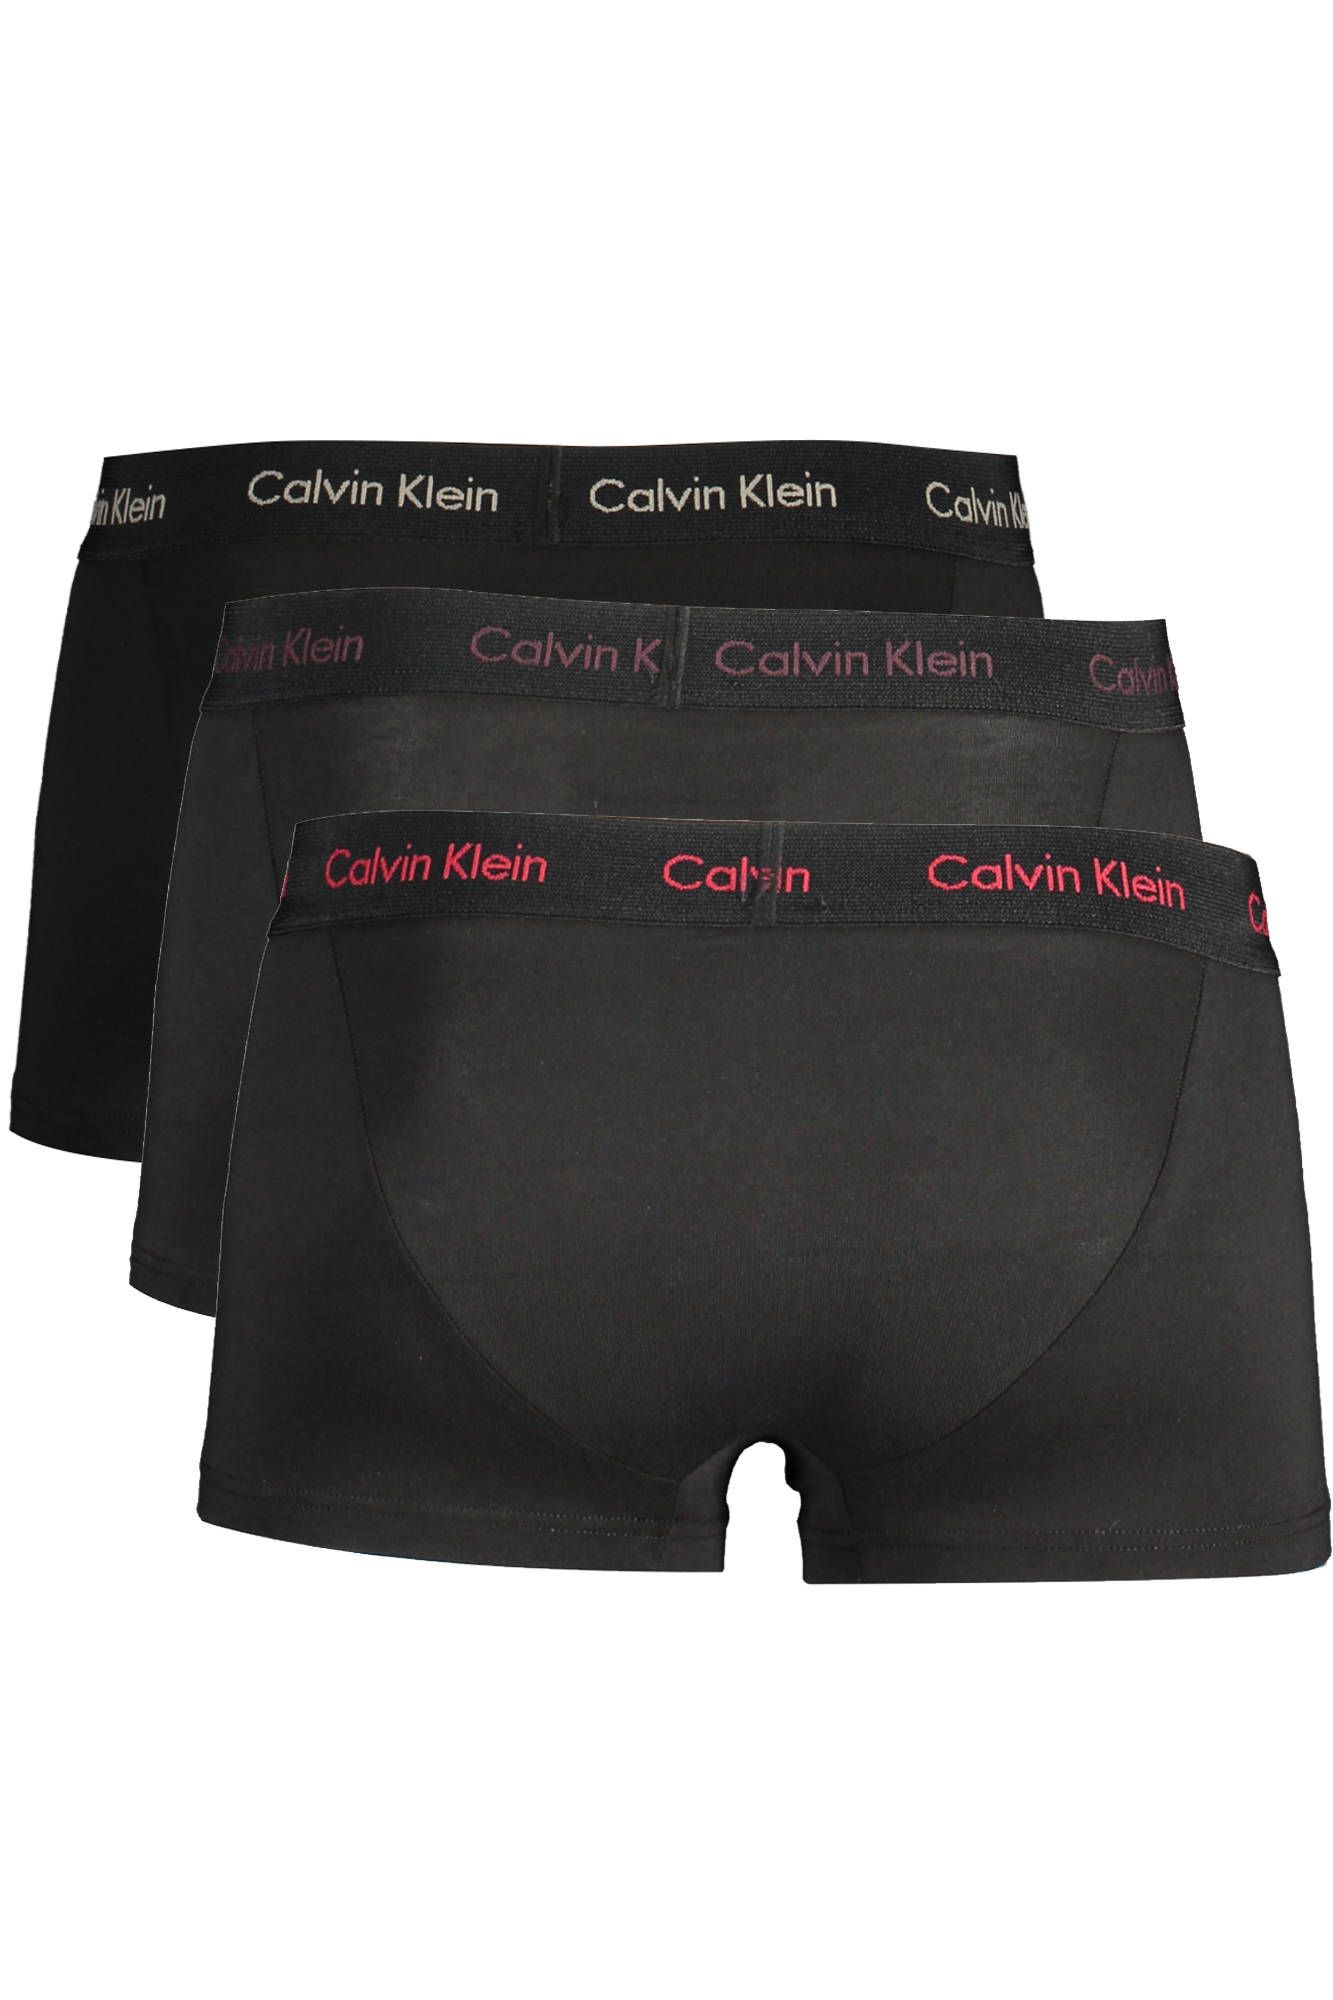 Black Cotton Underwear